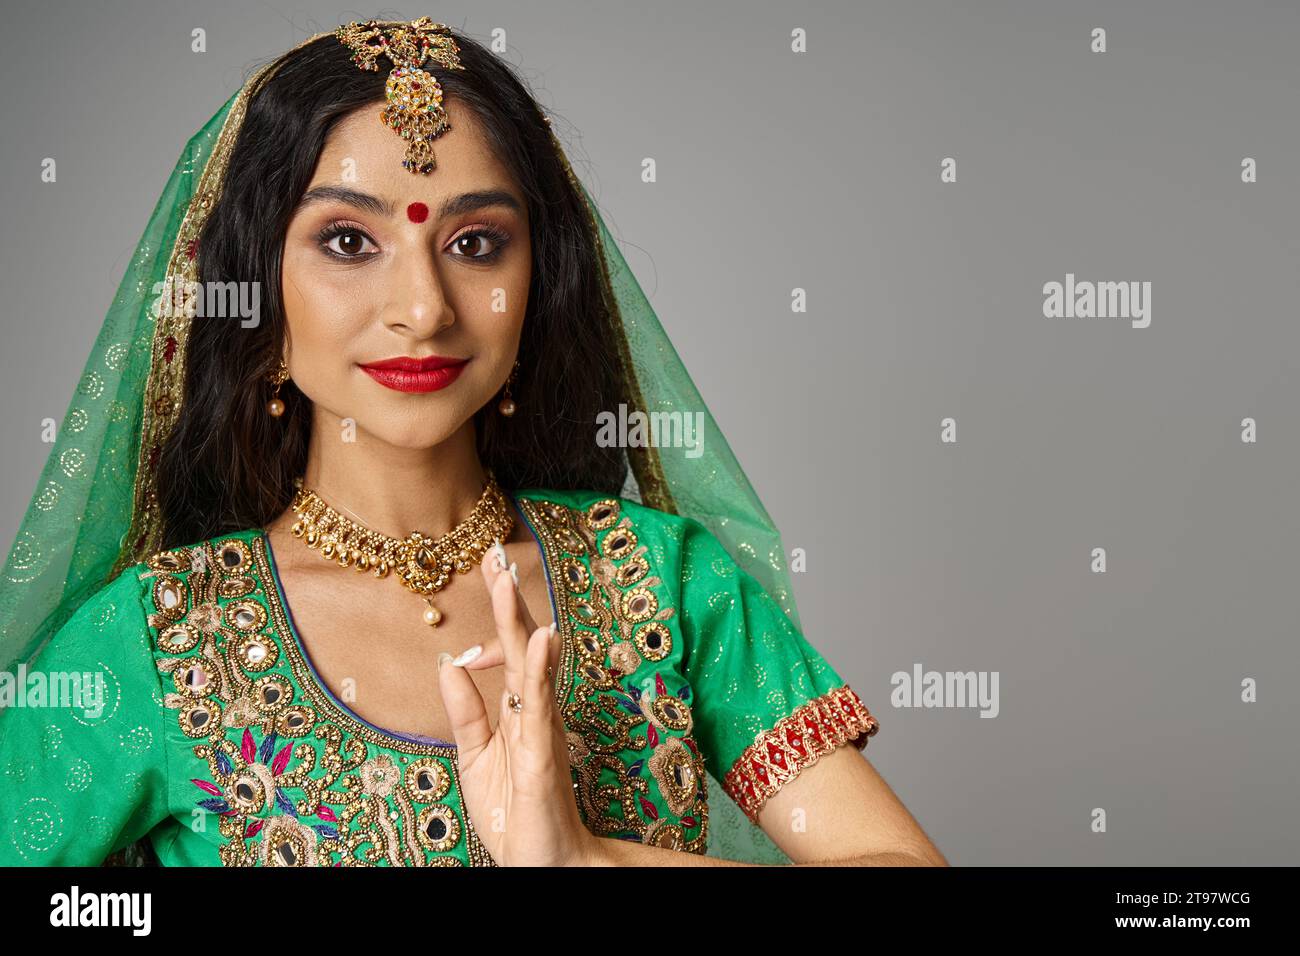 portrait de belle femme indienne avec bindi point sur le front en faisant des gestes et en regardant la caméra Banque D'Images